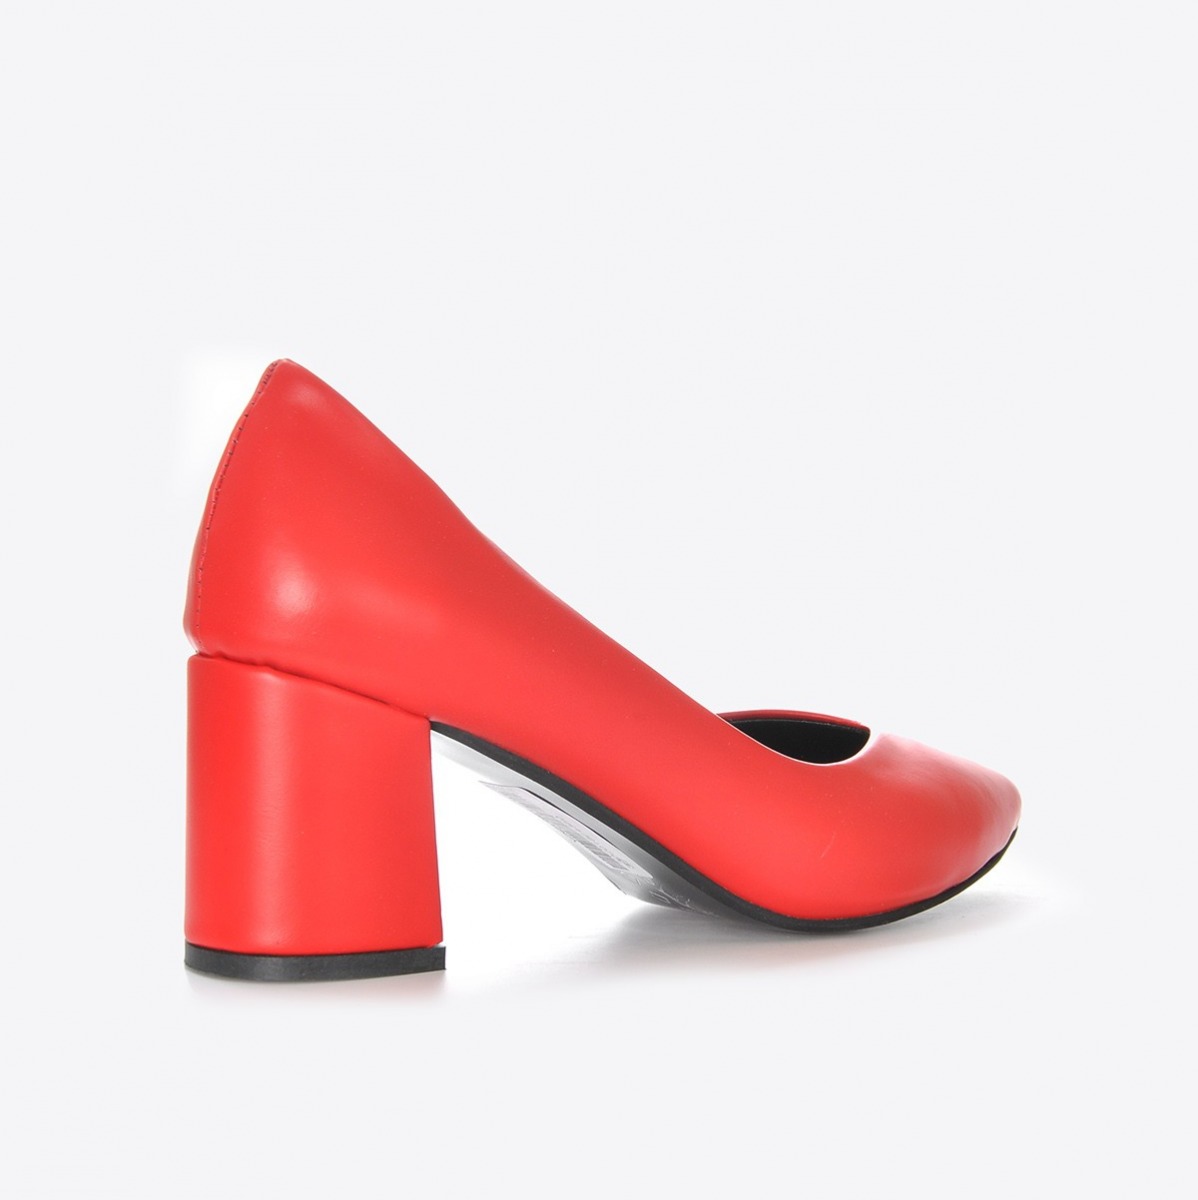 Flo Kadın Kırmızı Klasik Topuklu Ayakkabı VZN21-002Y. 5